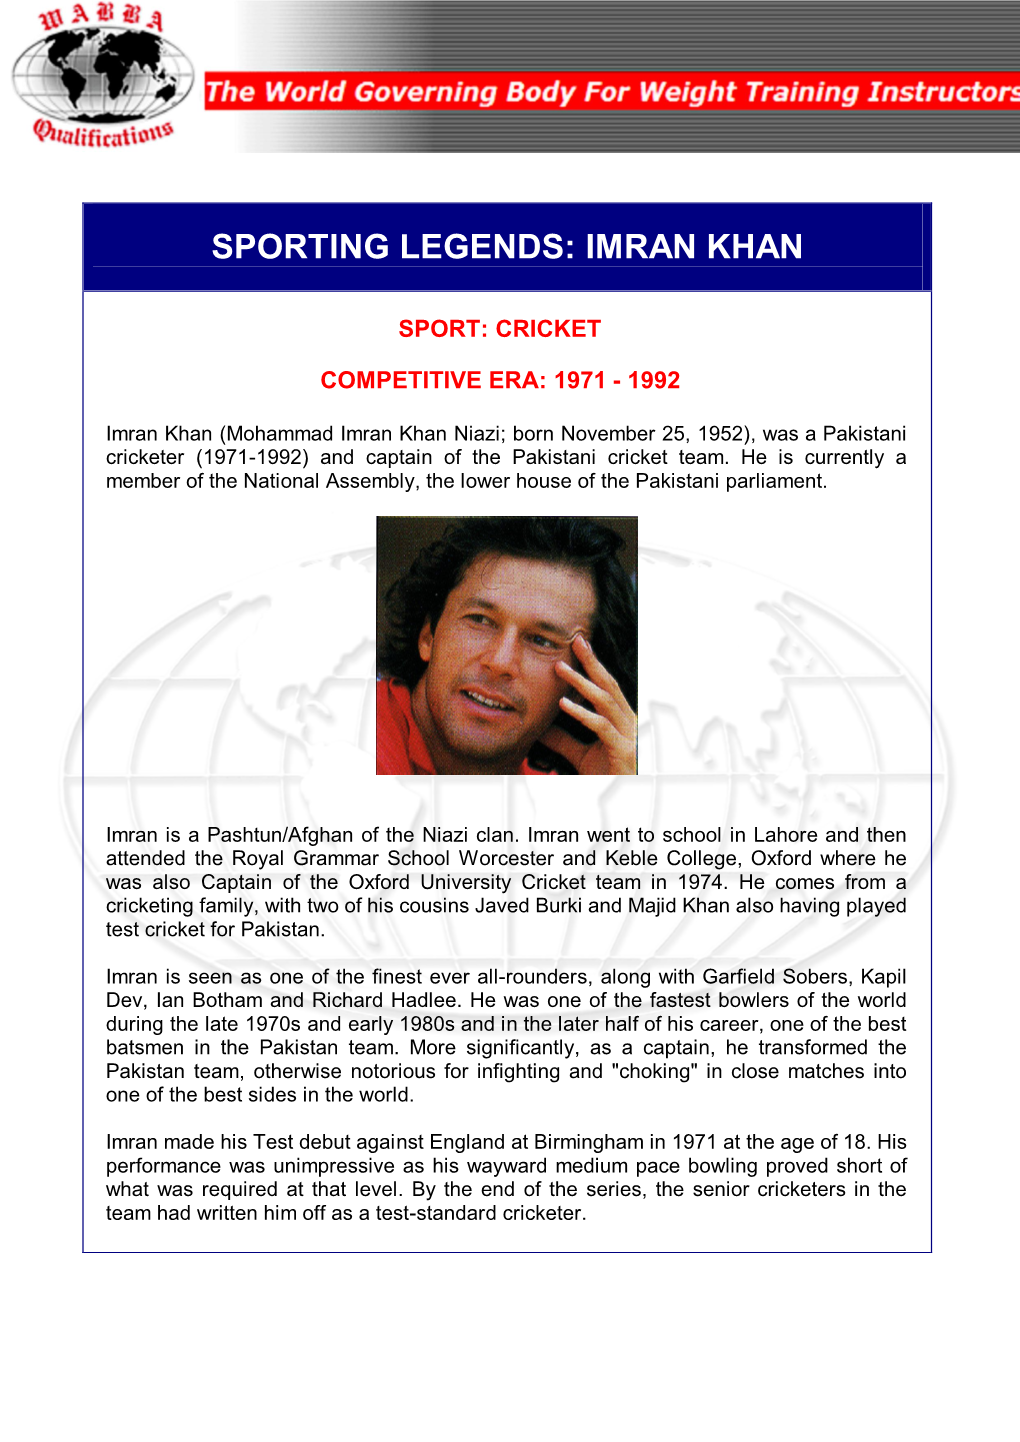 Sporting Legends: Imran Khan